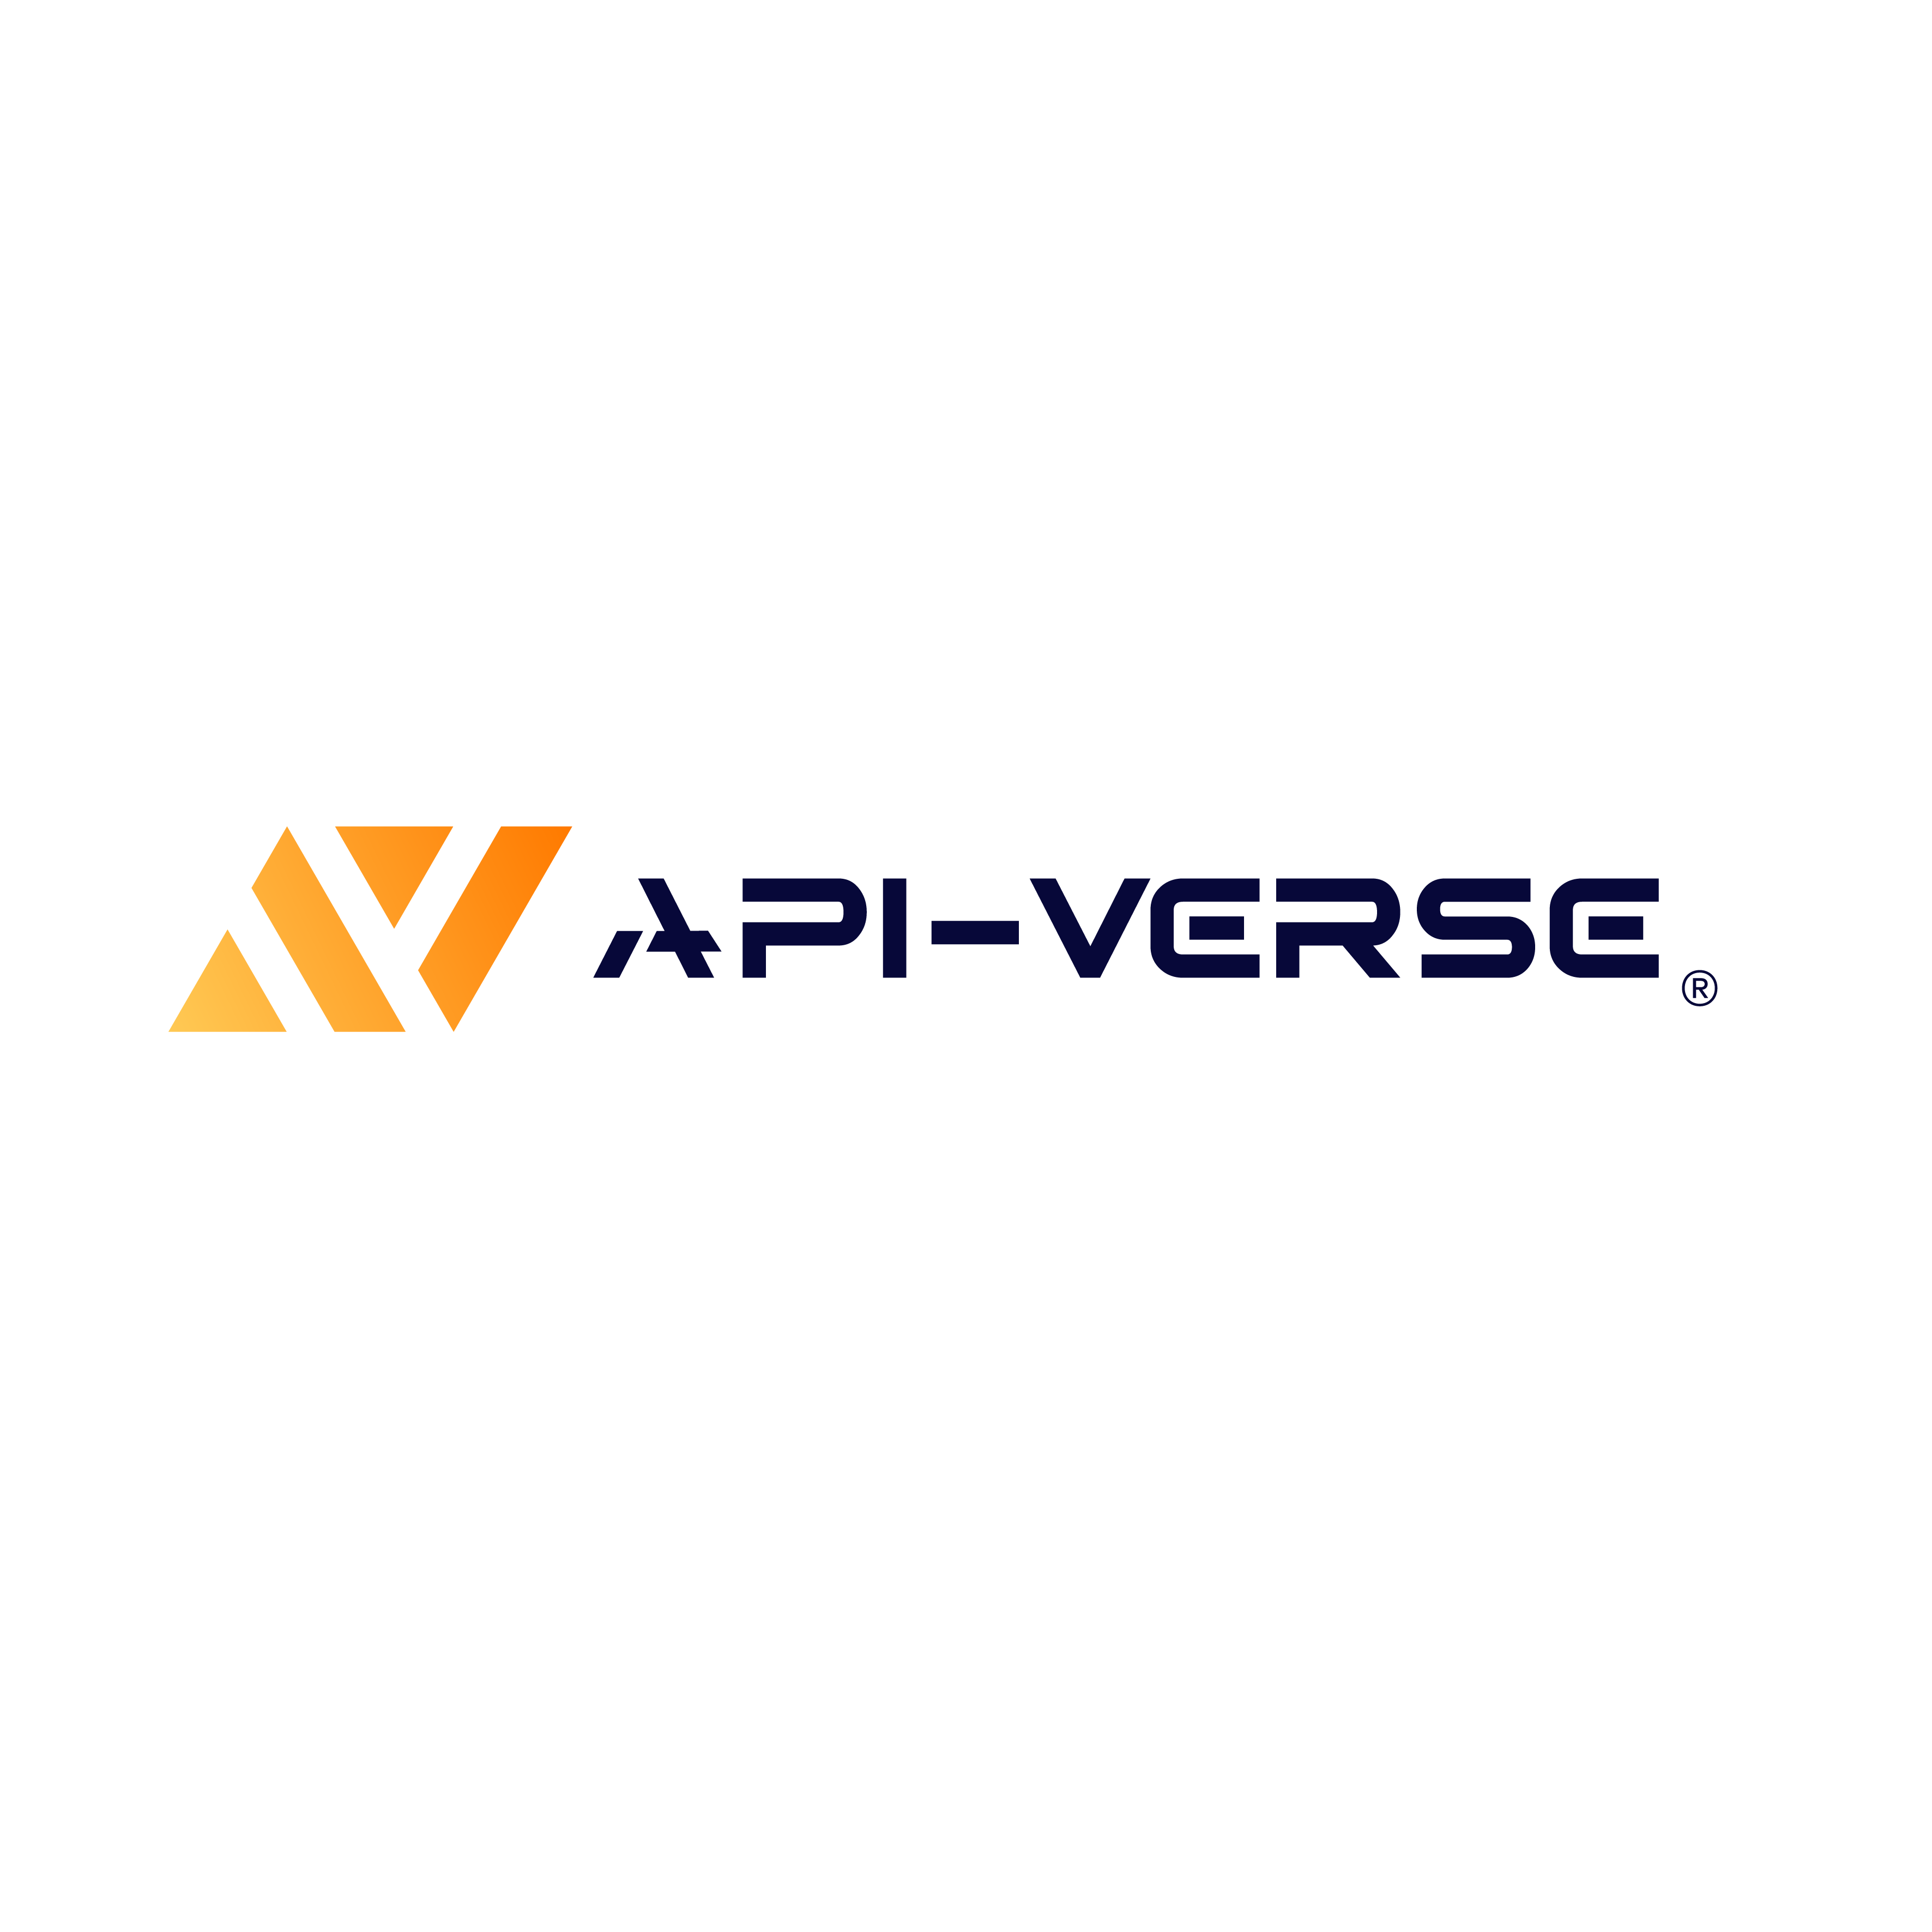 API - Verse